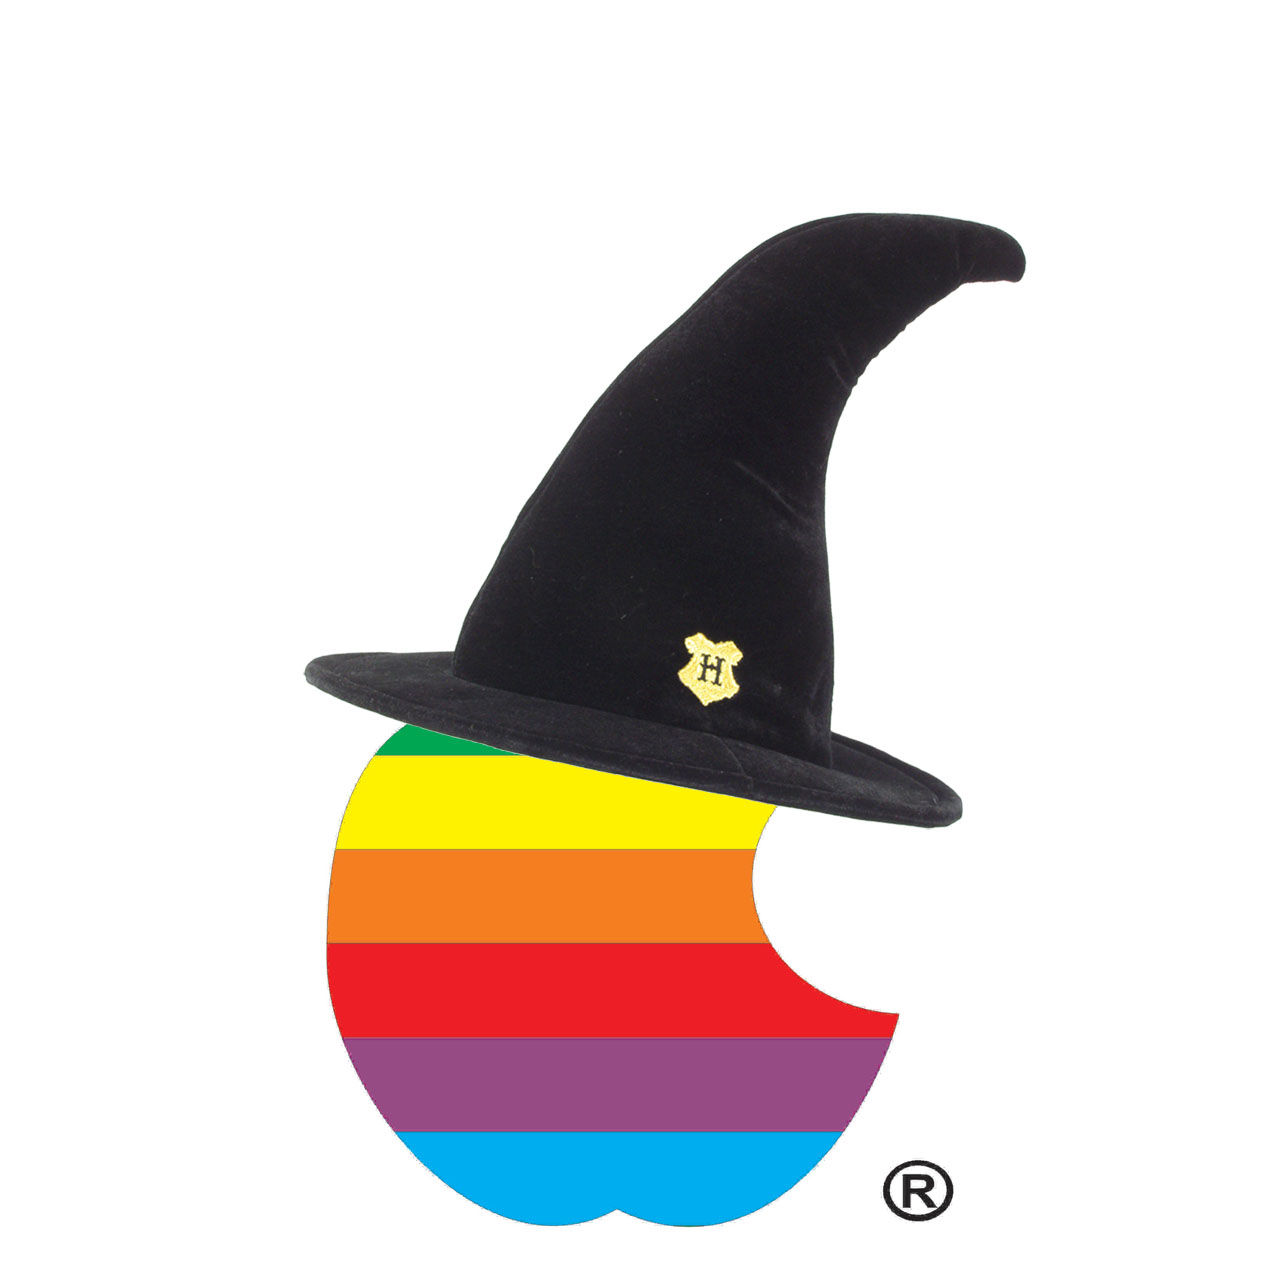 Apple är för första gången med på Black Hat